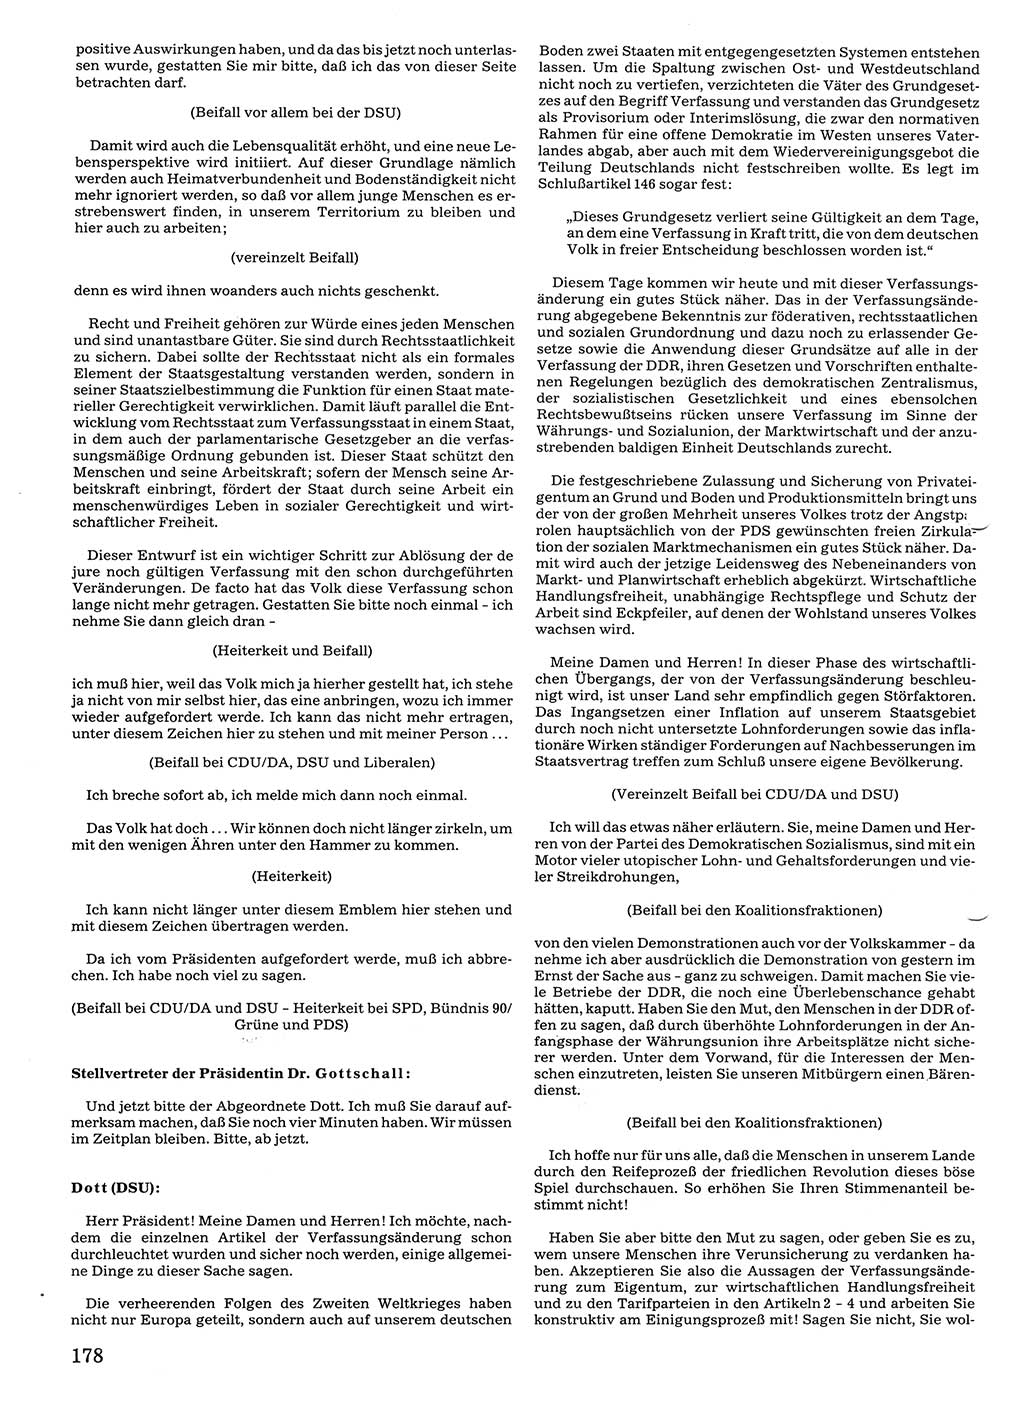 Tagungen der Volkskammer (VK) der Deutschen Demokratischen Republik (DDR), 10. Wahlperiode 1990, Seite 178 (VK. DDR 10. WP. 1990, Prot. Tg. 1-38, 5.4.-2.10.1990, S. 178)